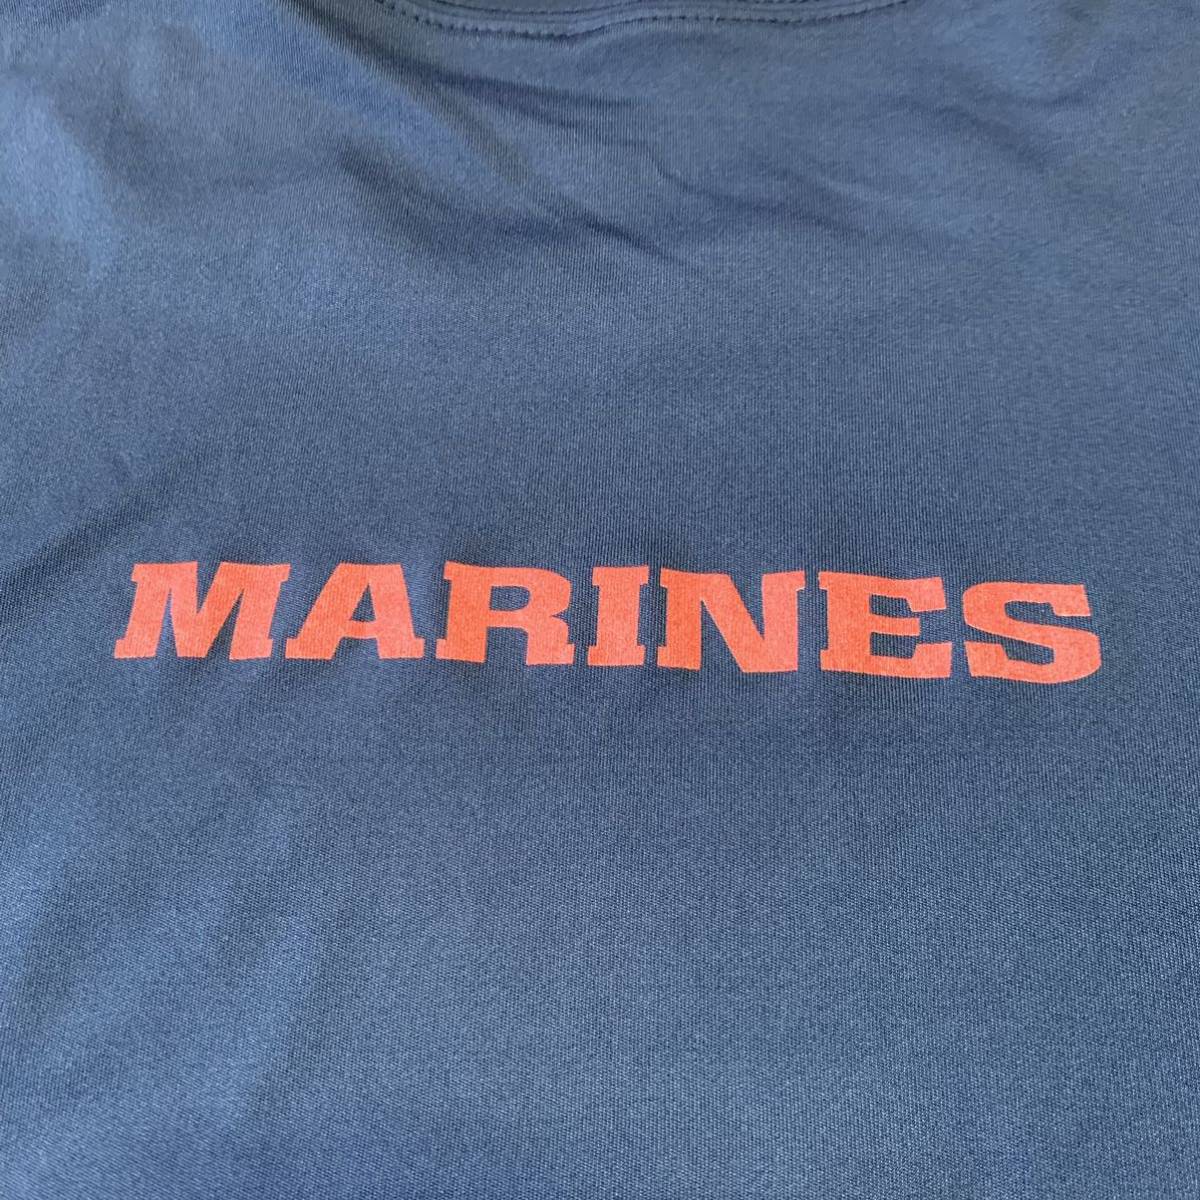  Okinawa вооруженные силы США сброшенный товар USMC MARINE милитари короткий рукав футболка тренировка бег .tore спорт XLARGE темно-синий ( контрольный номер NO48)